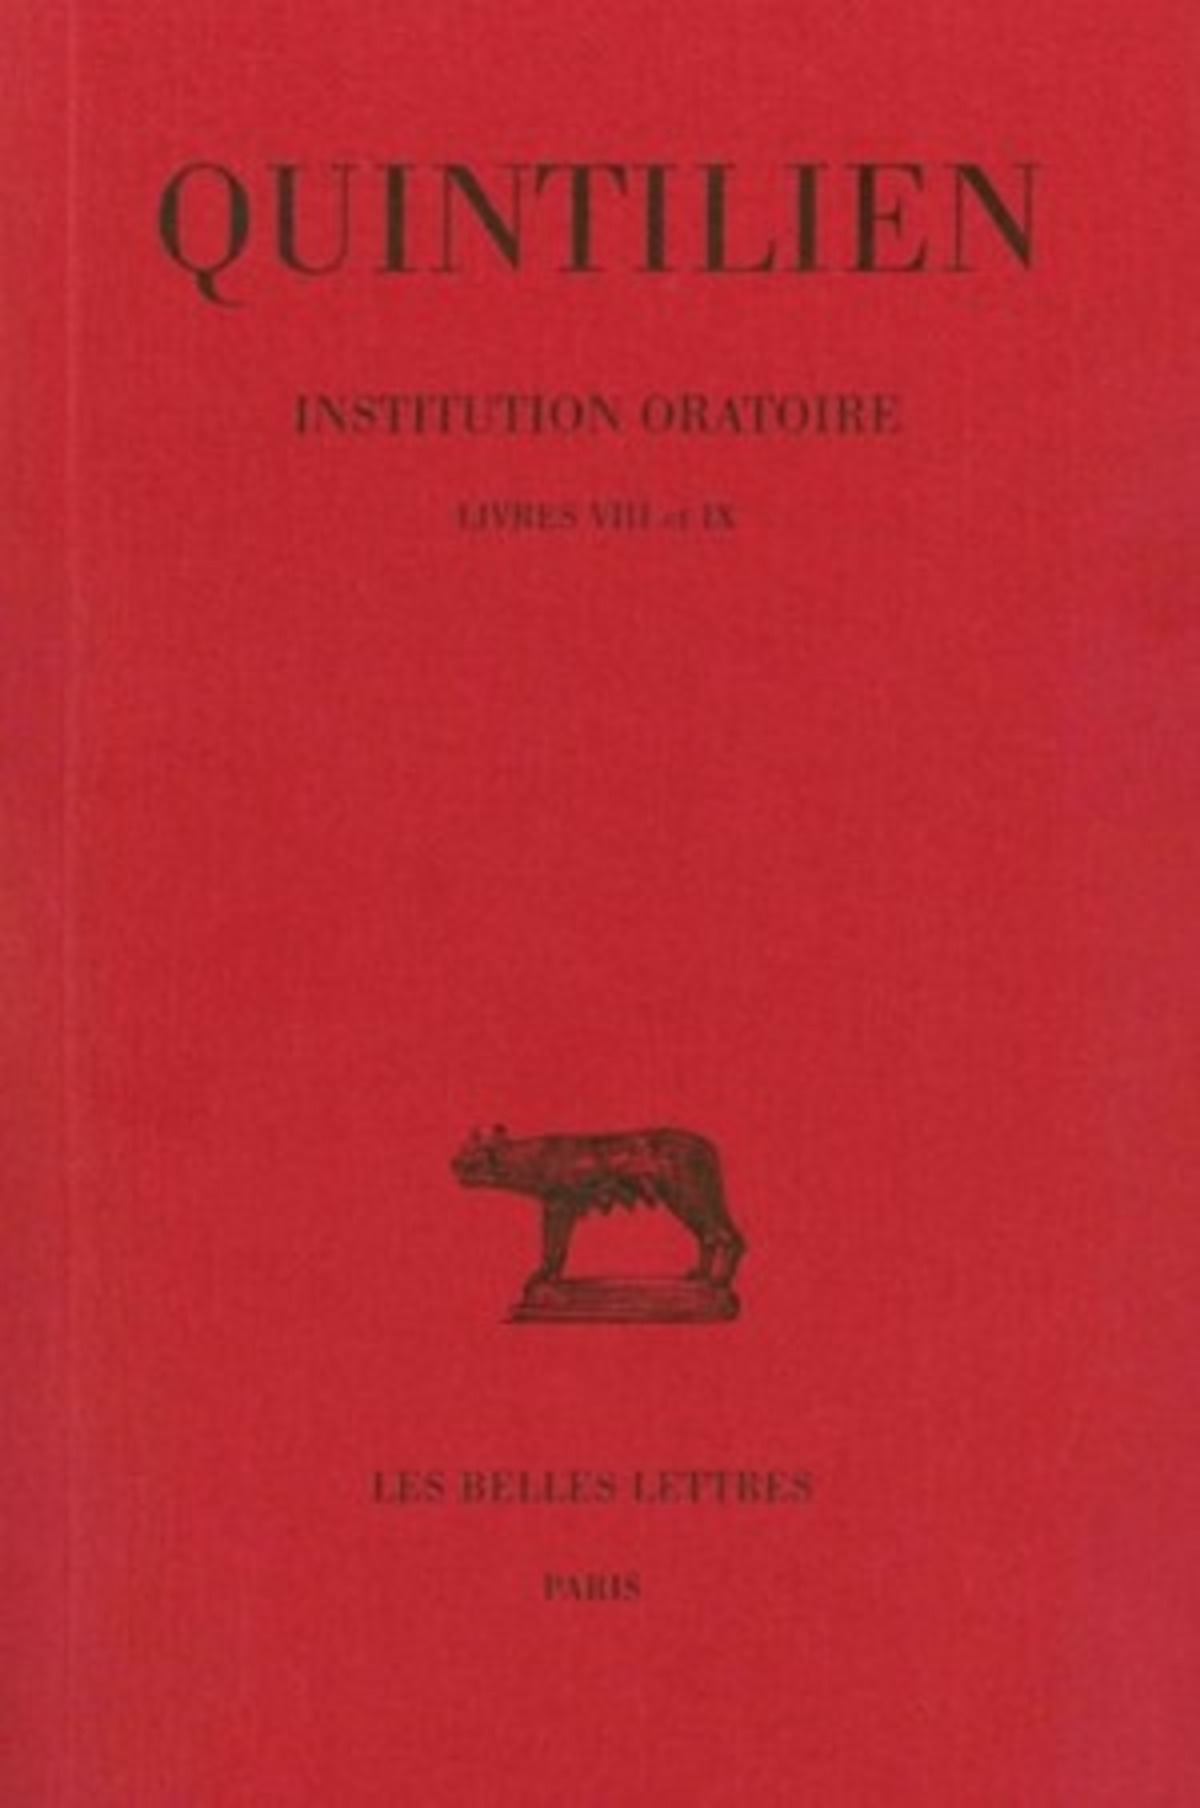 Institution oratoire. Tome V : Livres VIII et IX